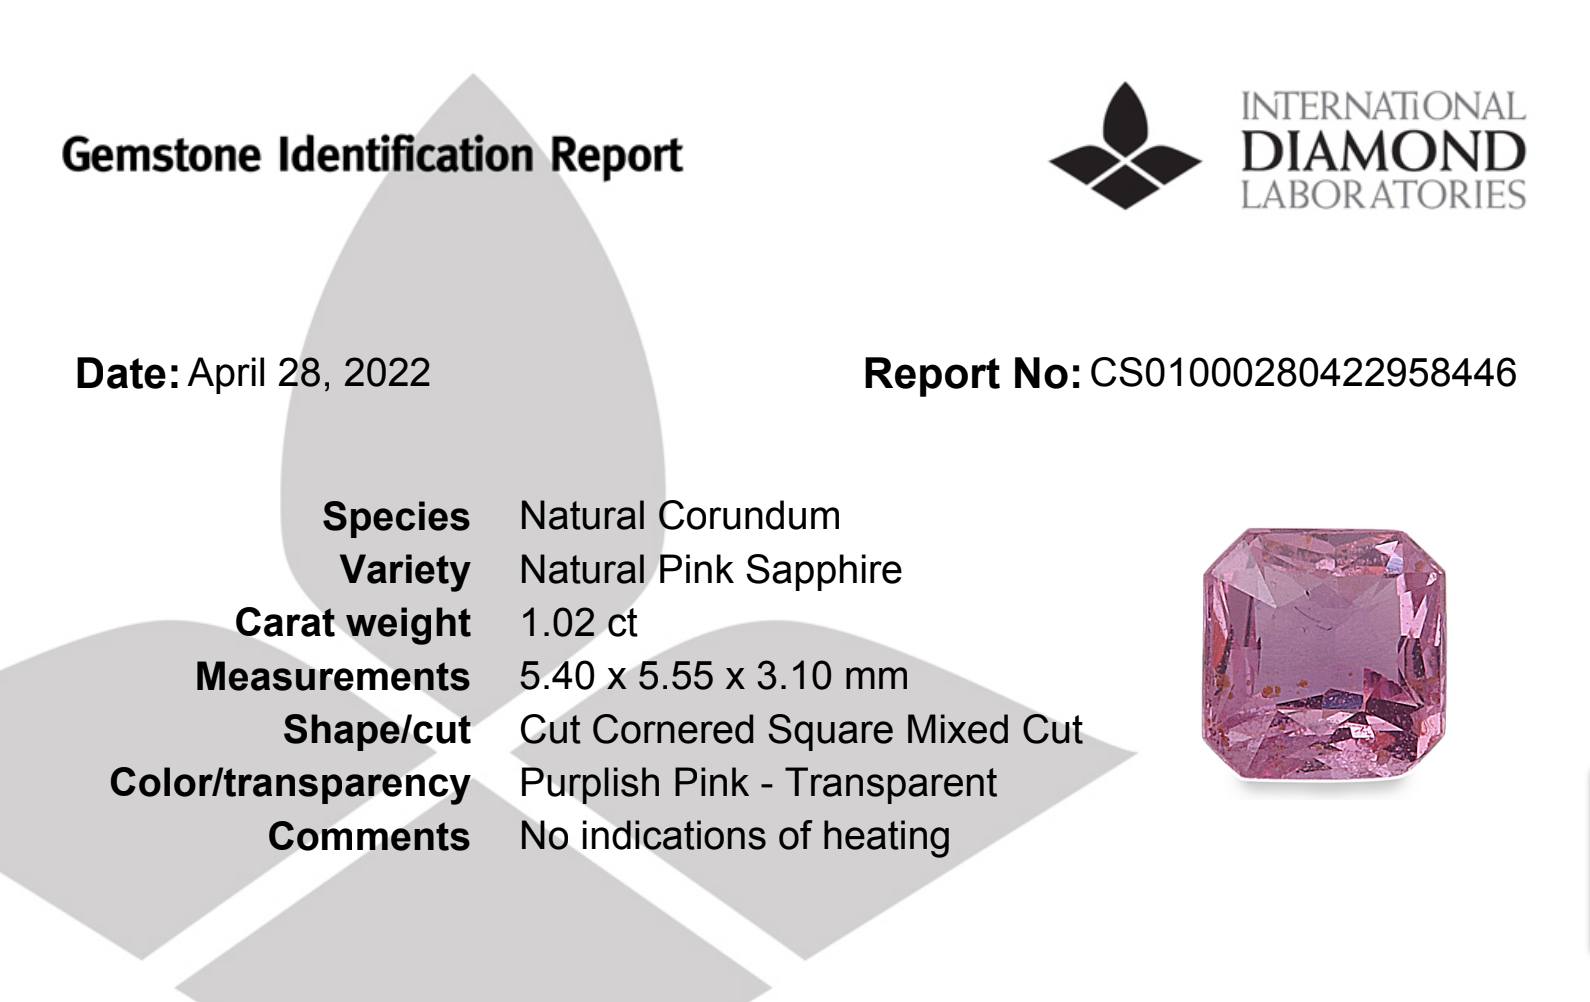 Pink Sapphire Natural Stone Asscher Cut 1.02 Carats